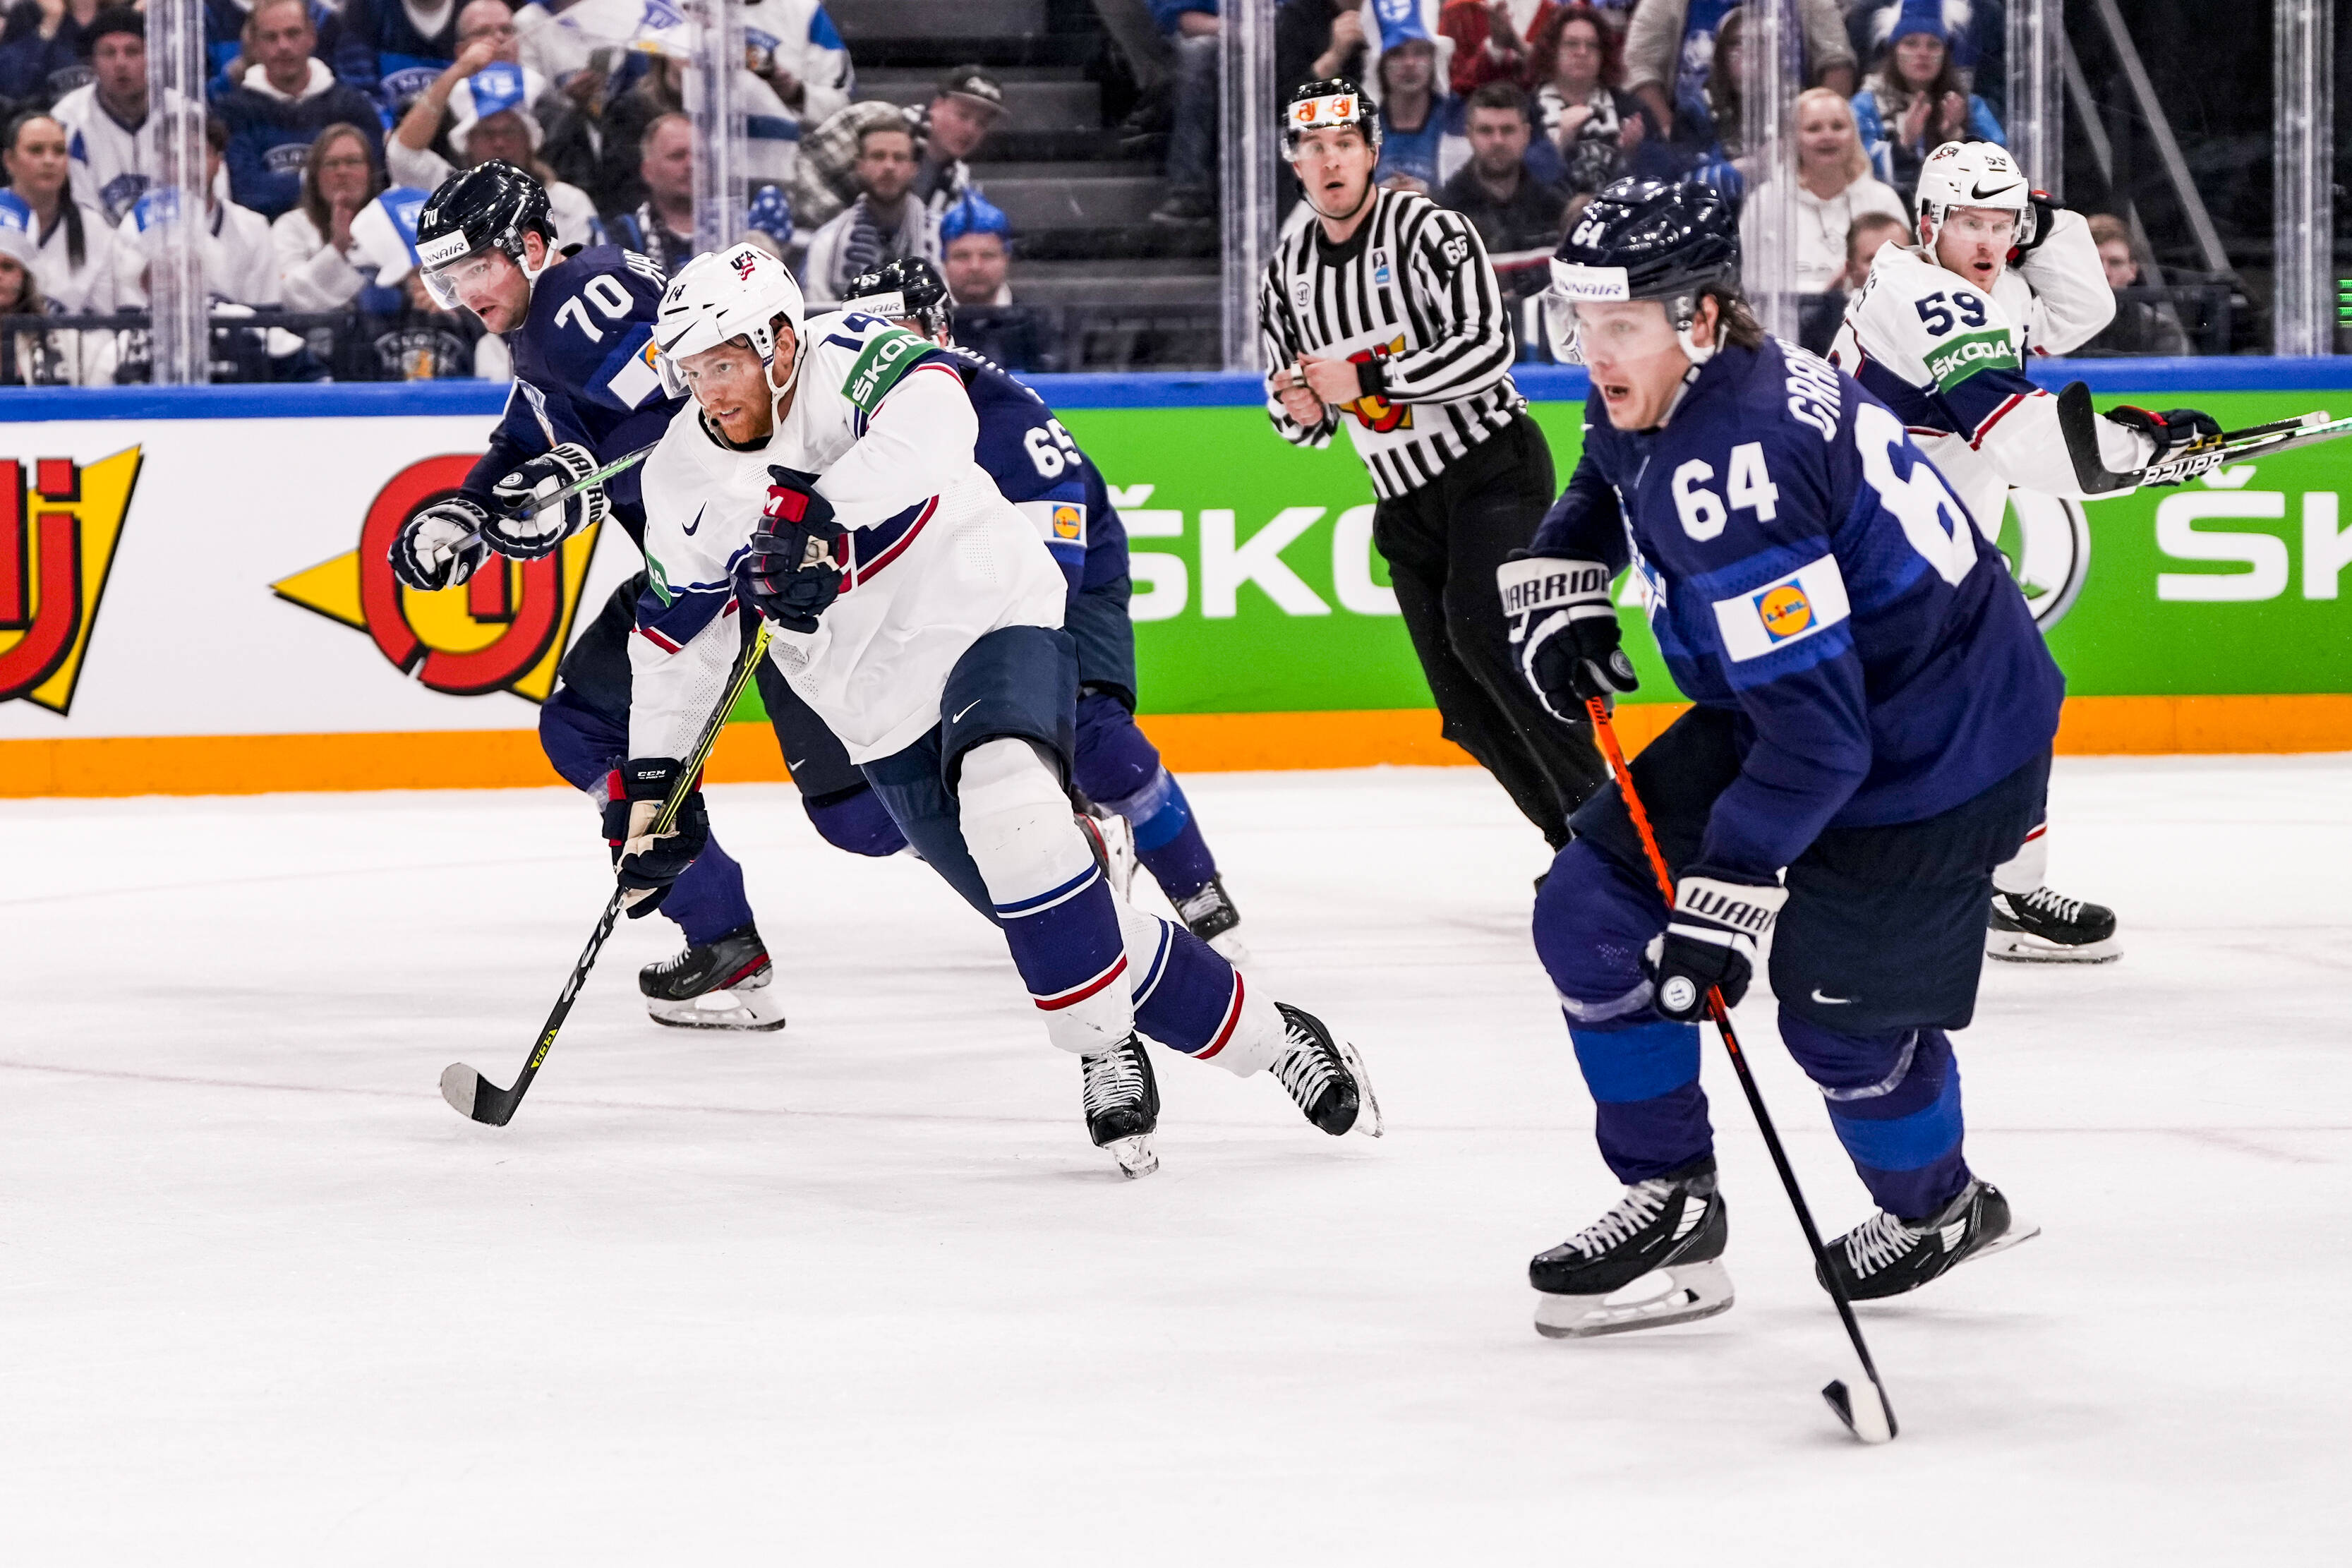 Hokej United States Hockey vs Česká republika Stream: Sledujte IIHF zdarma – Jak sledovat a streamovat Major League a College Sports